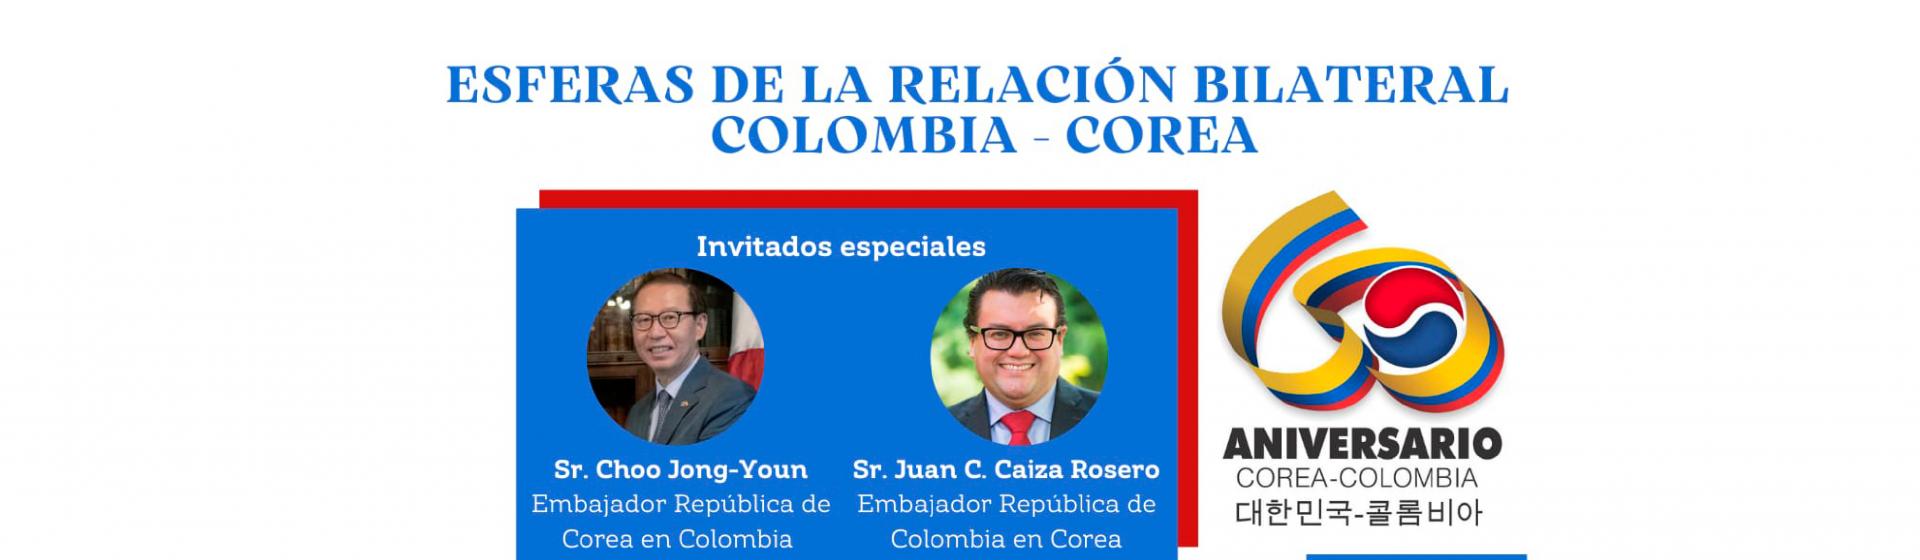 Esferas de la Relación Bilateral Colombia Corea.